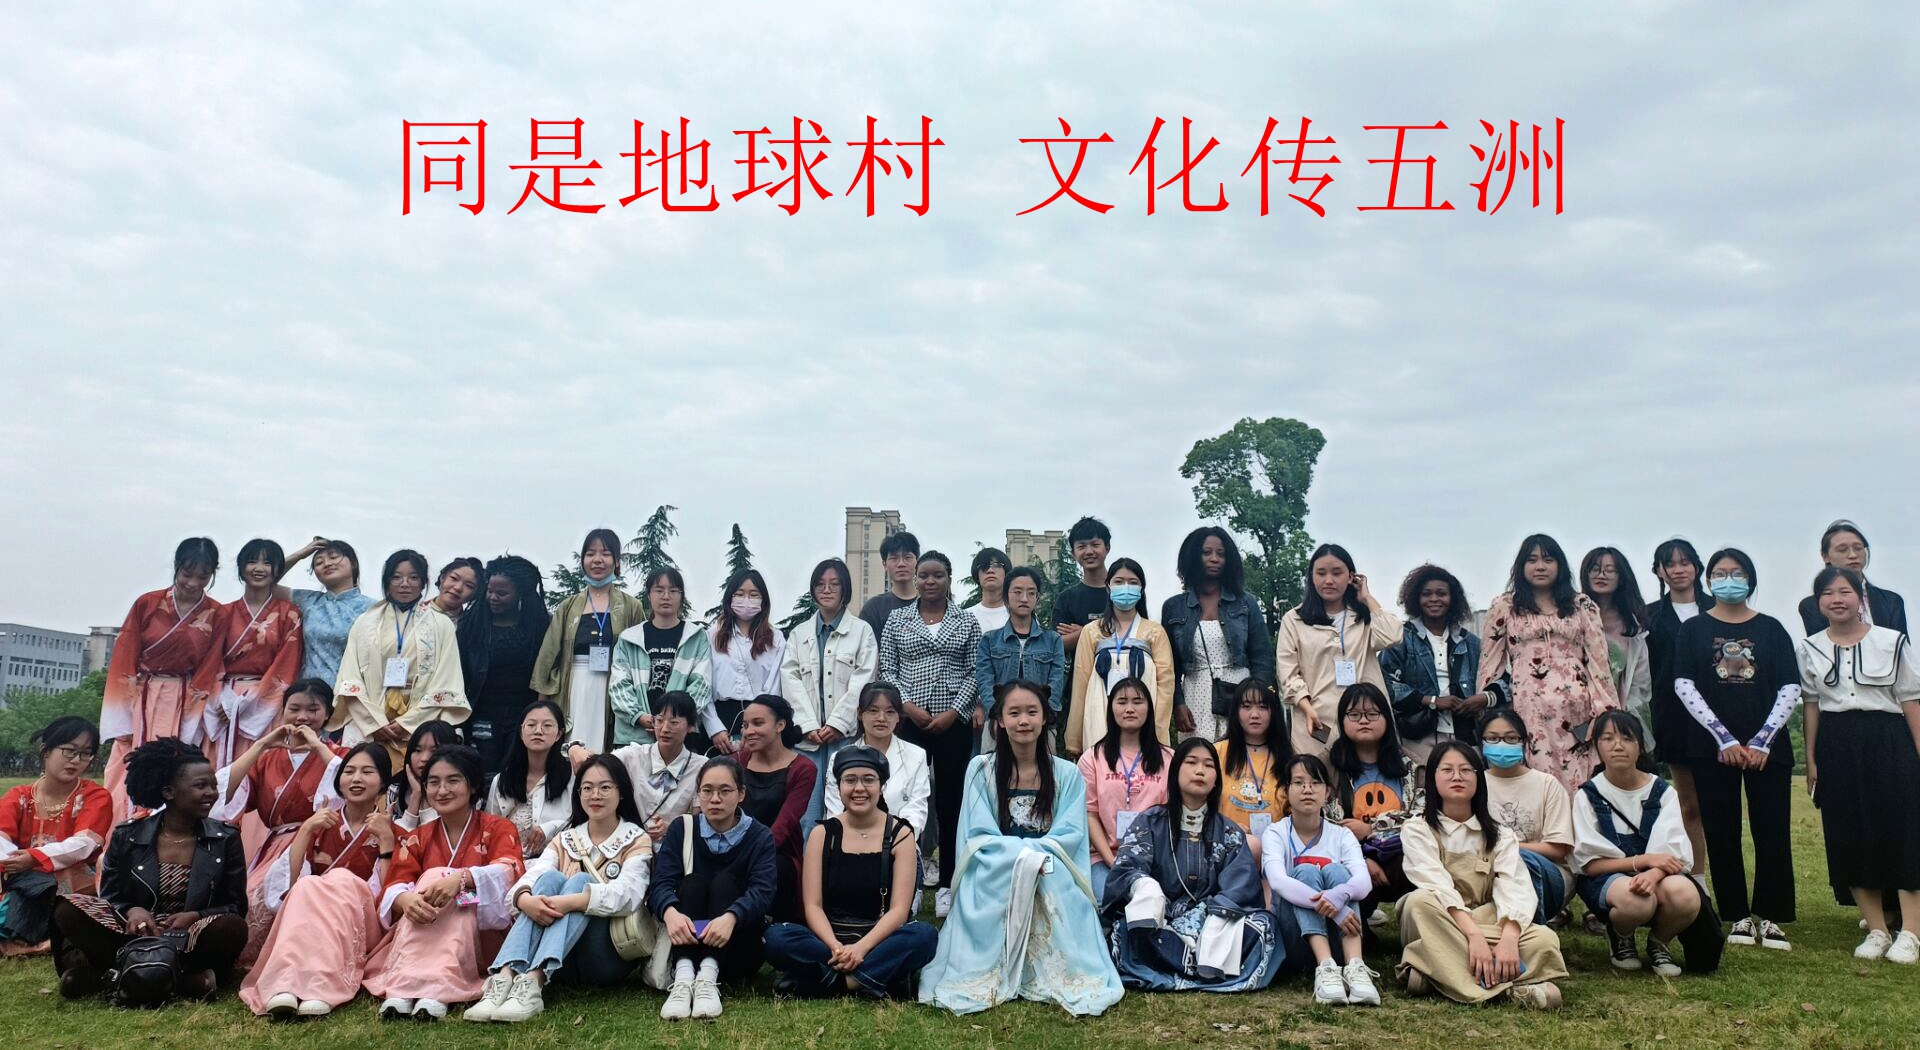 中外学生端午文化体验活动圆满结束-武汉大学国际教育学院